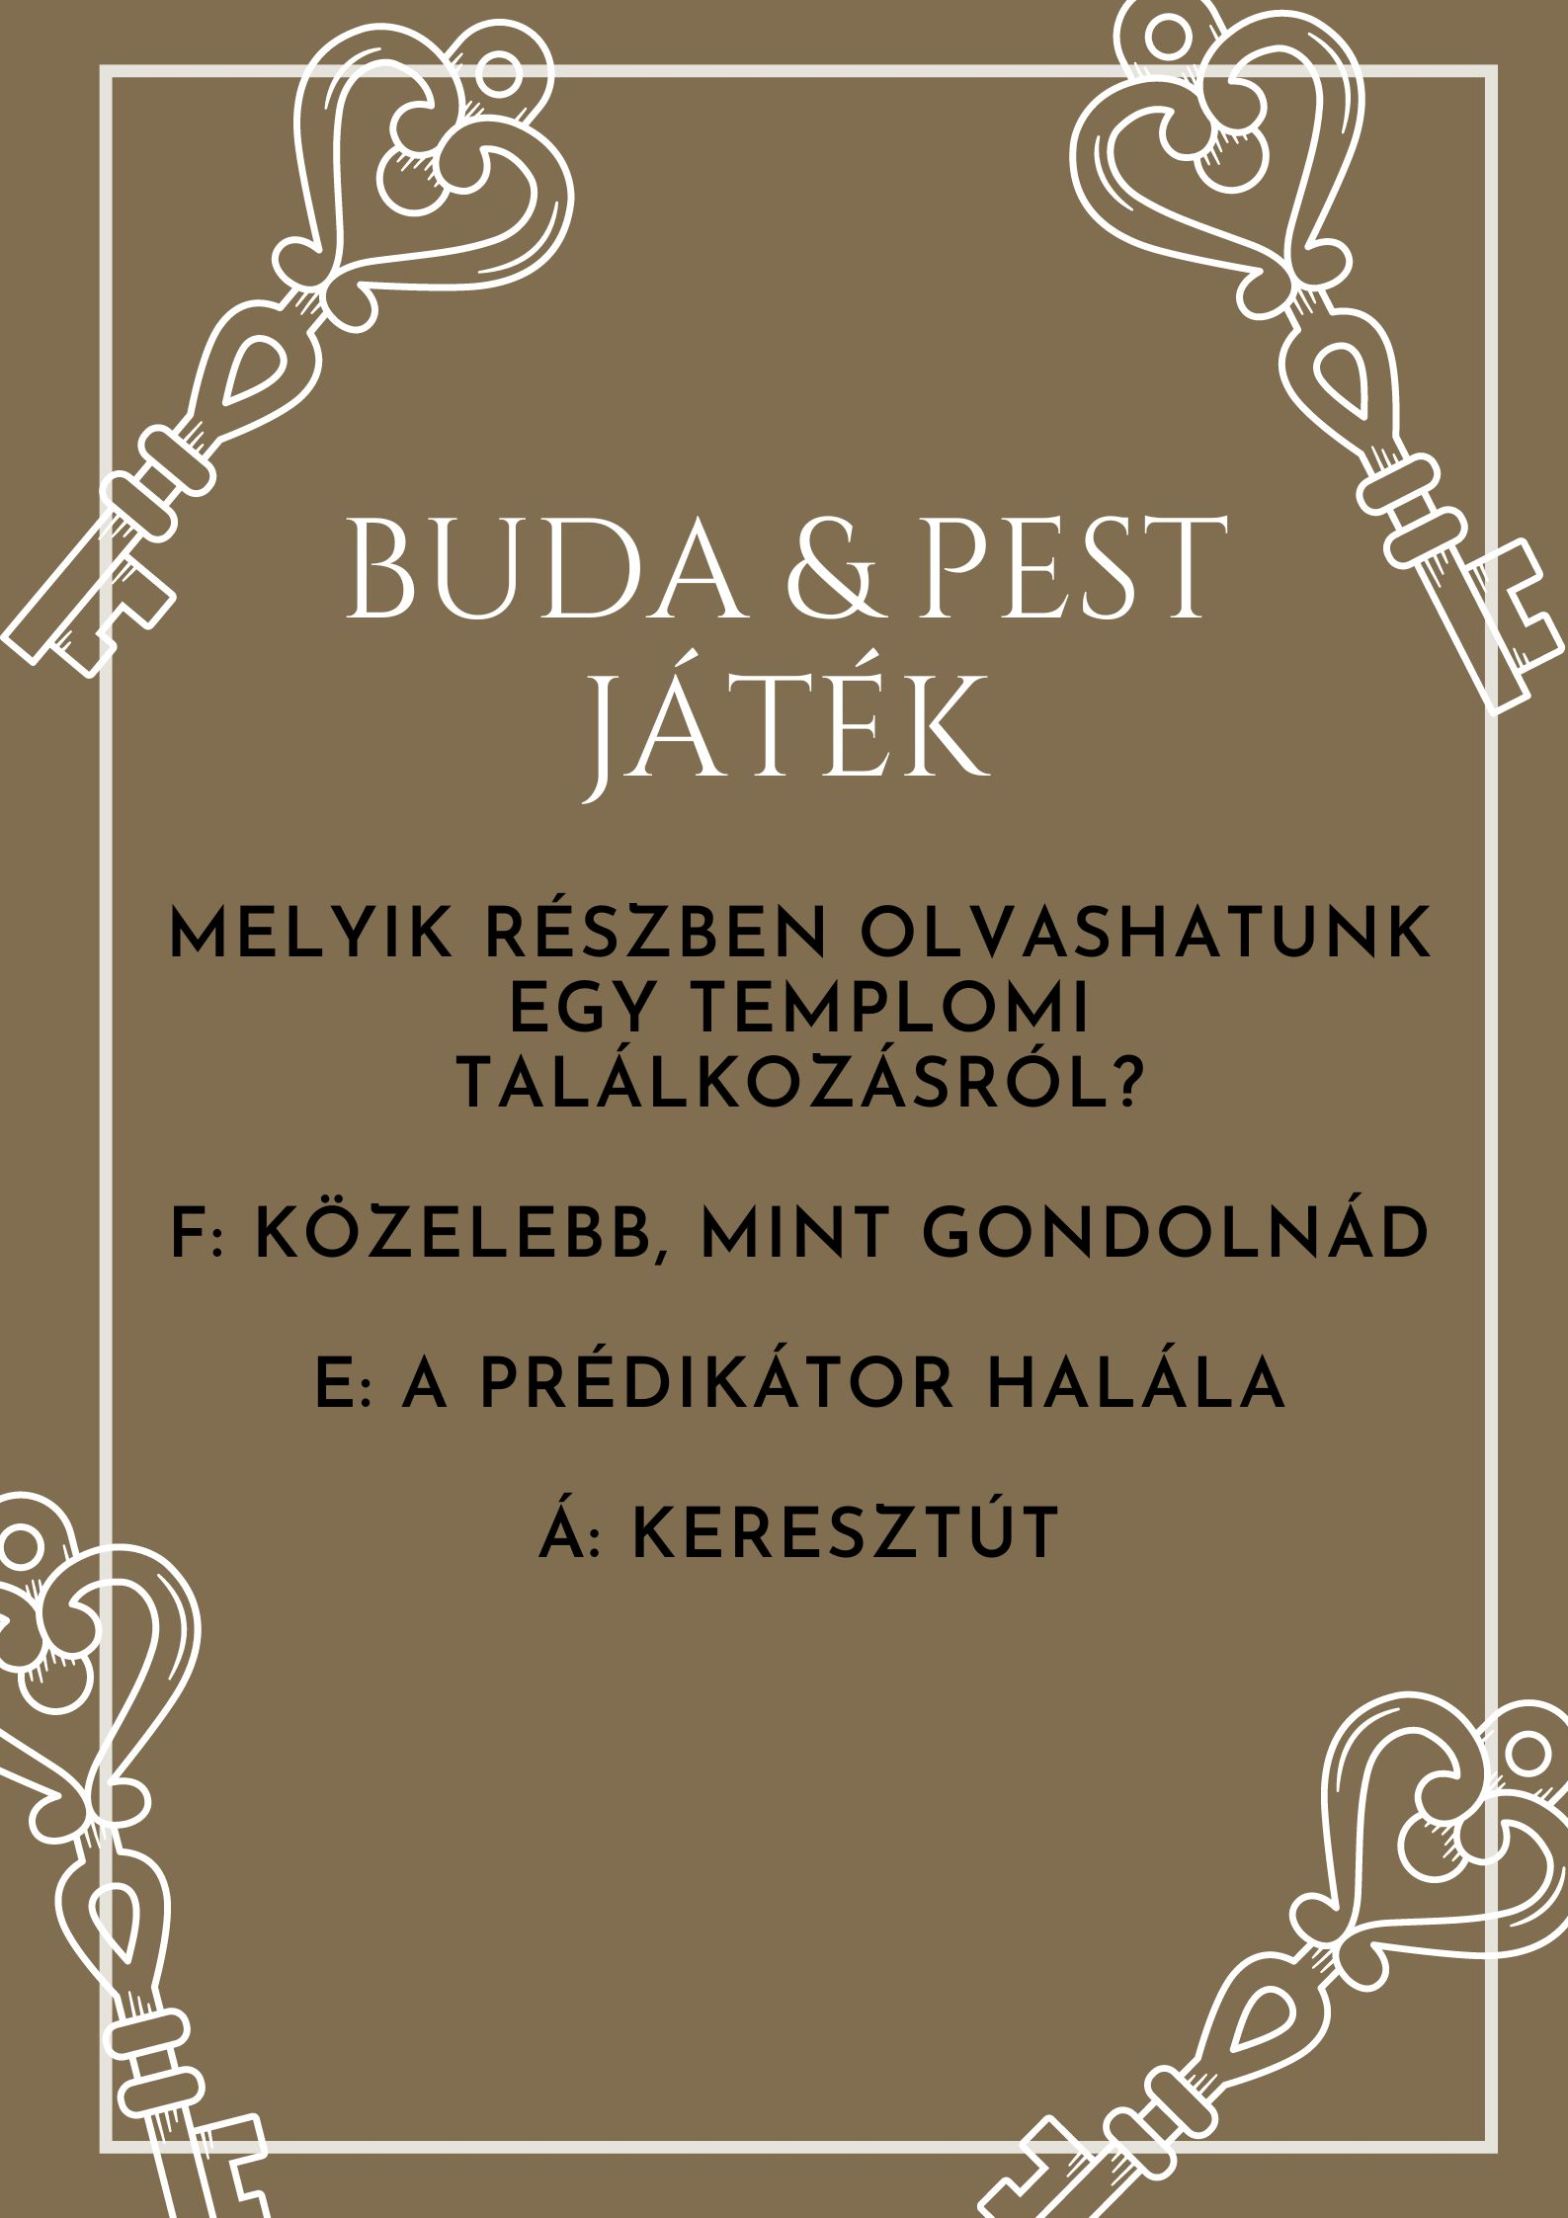 Buda & Pest regény nyereményjáték